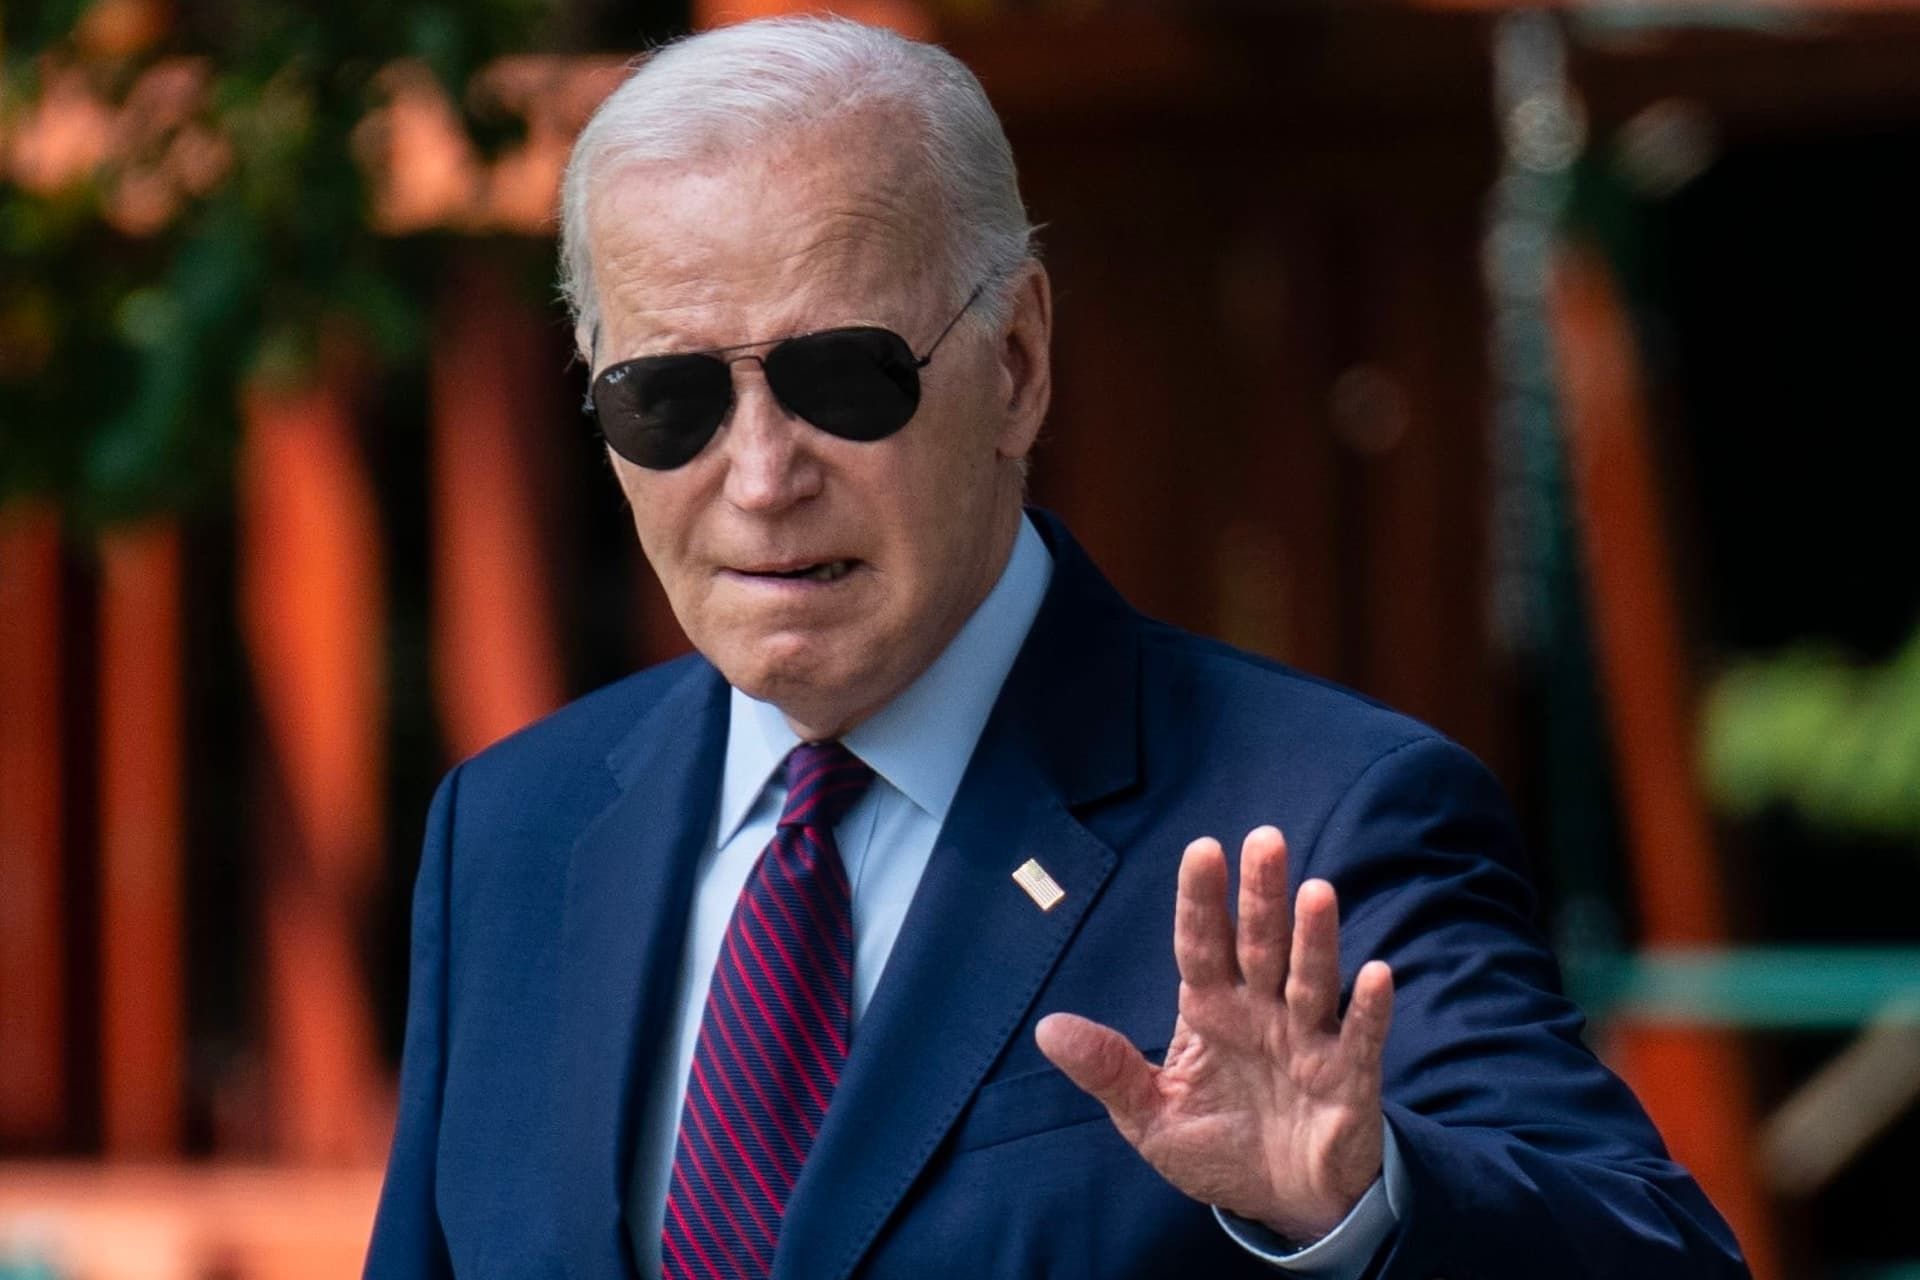 جو بایدن / Joe Biden رئیس جمهور آمریکا با عینک آفتابی و کت شلوار